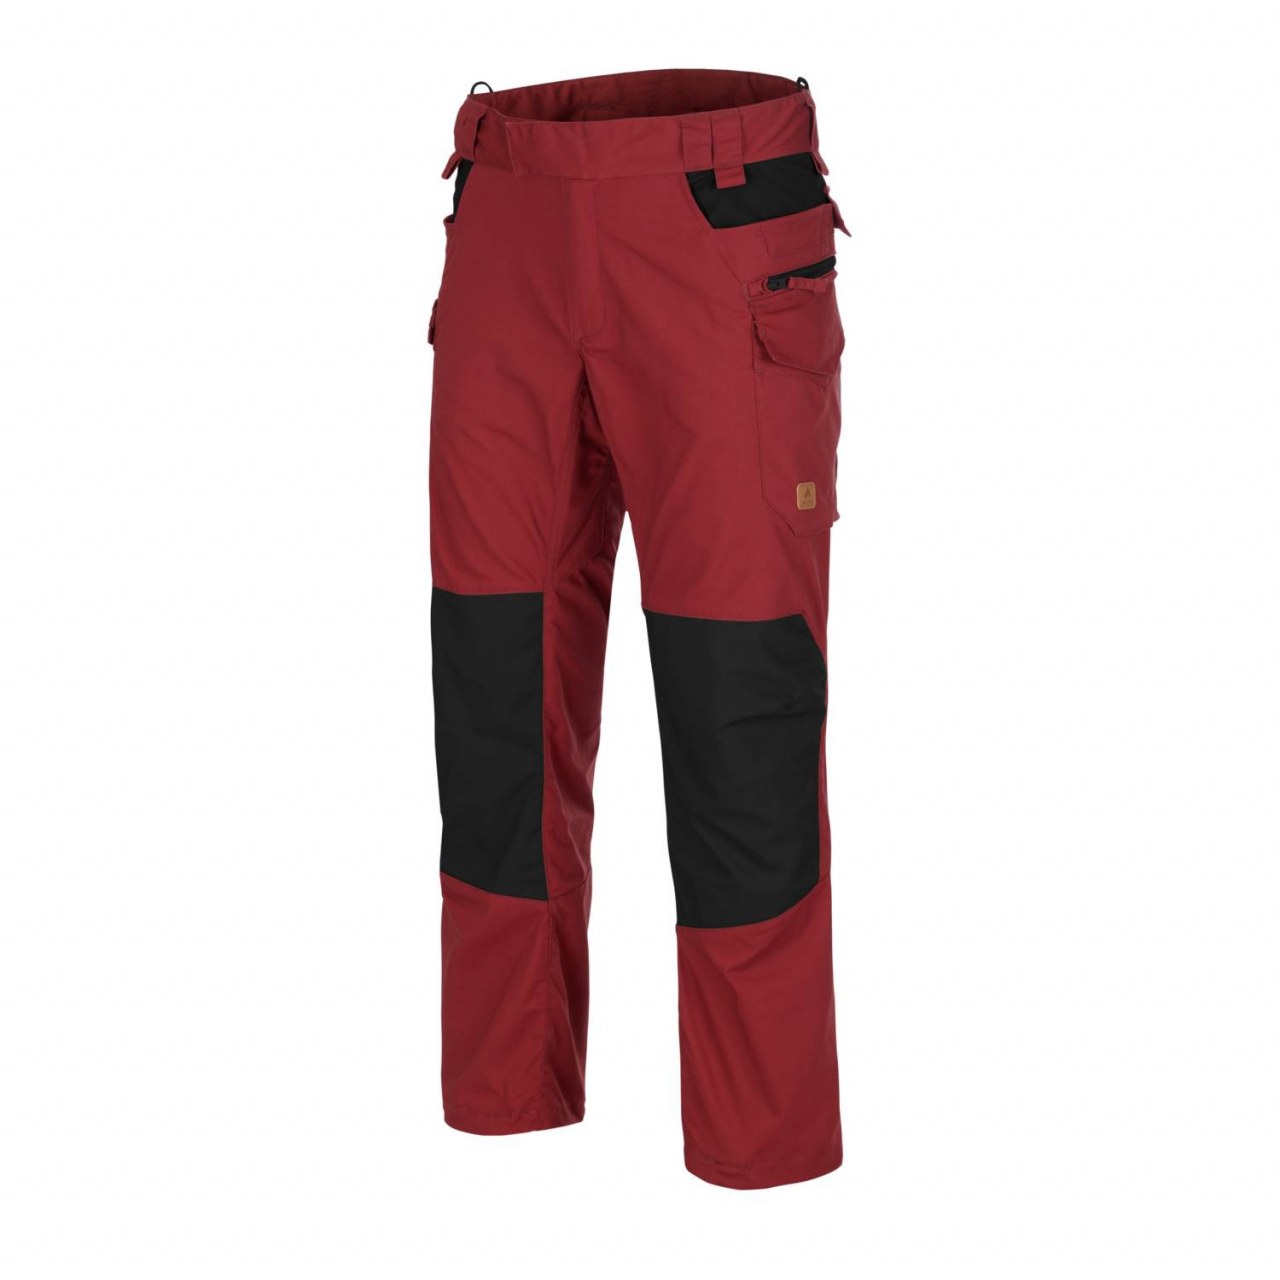 Kalhoty Helikon Pilgrim - červené-černé, XXL